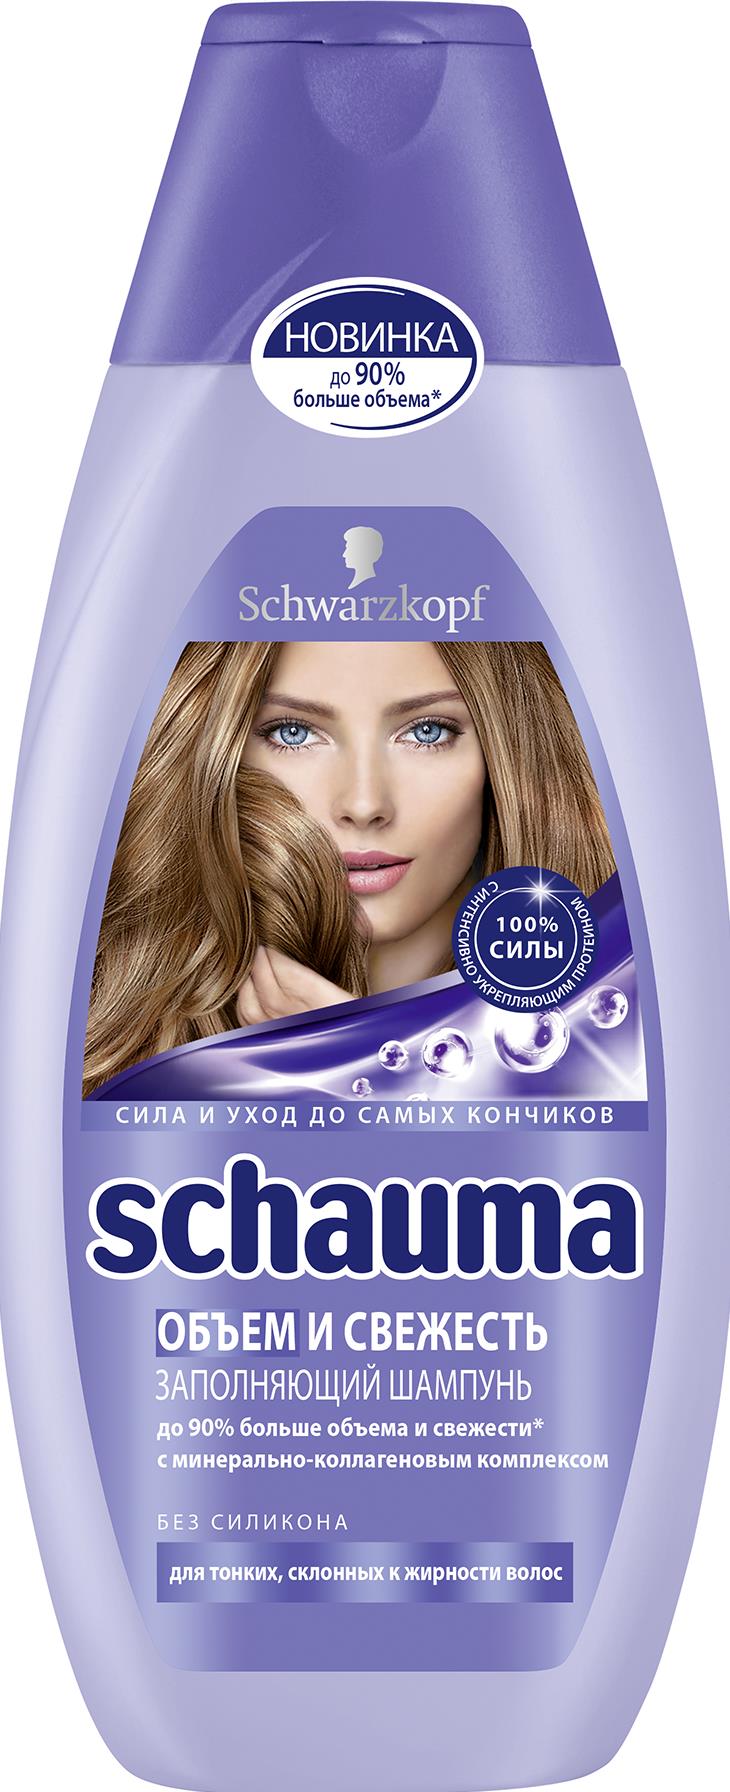 Шампунь Schauma Свежесть и Объем для волос